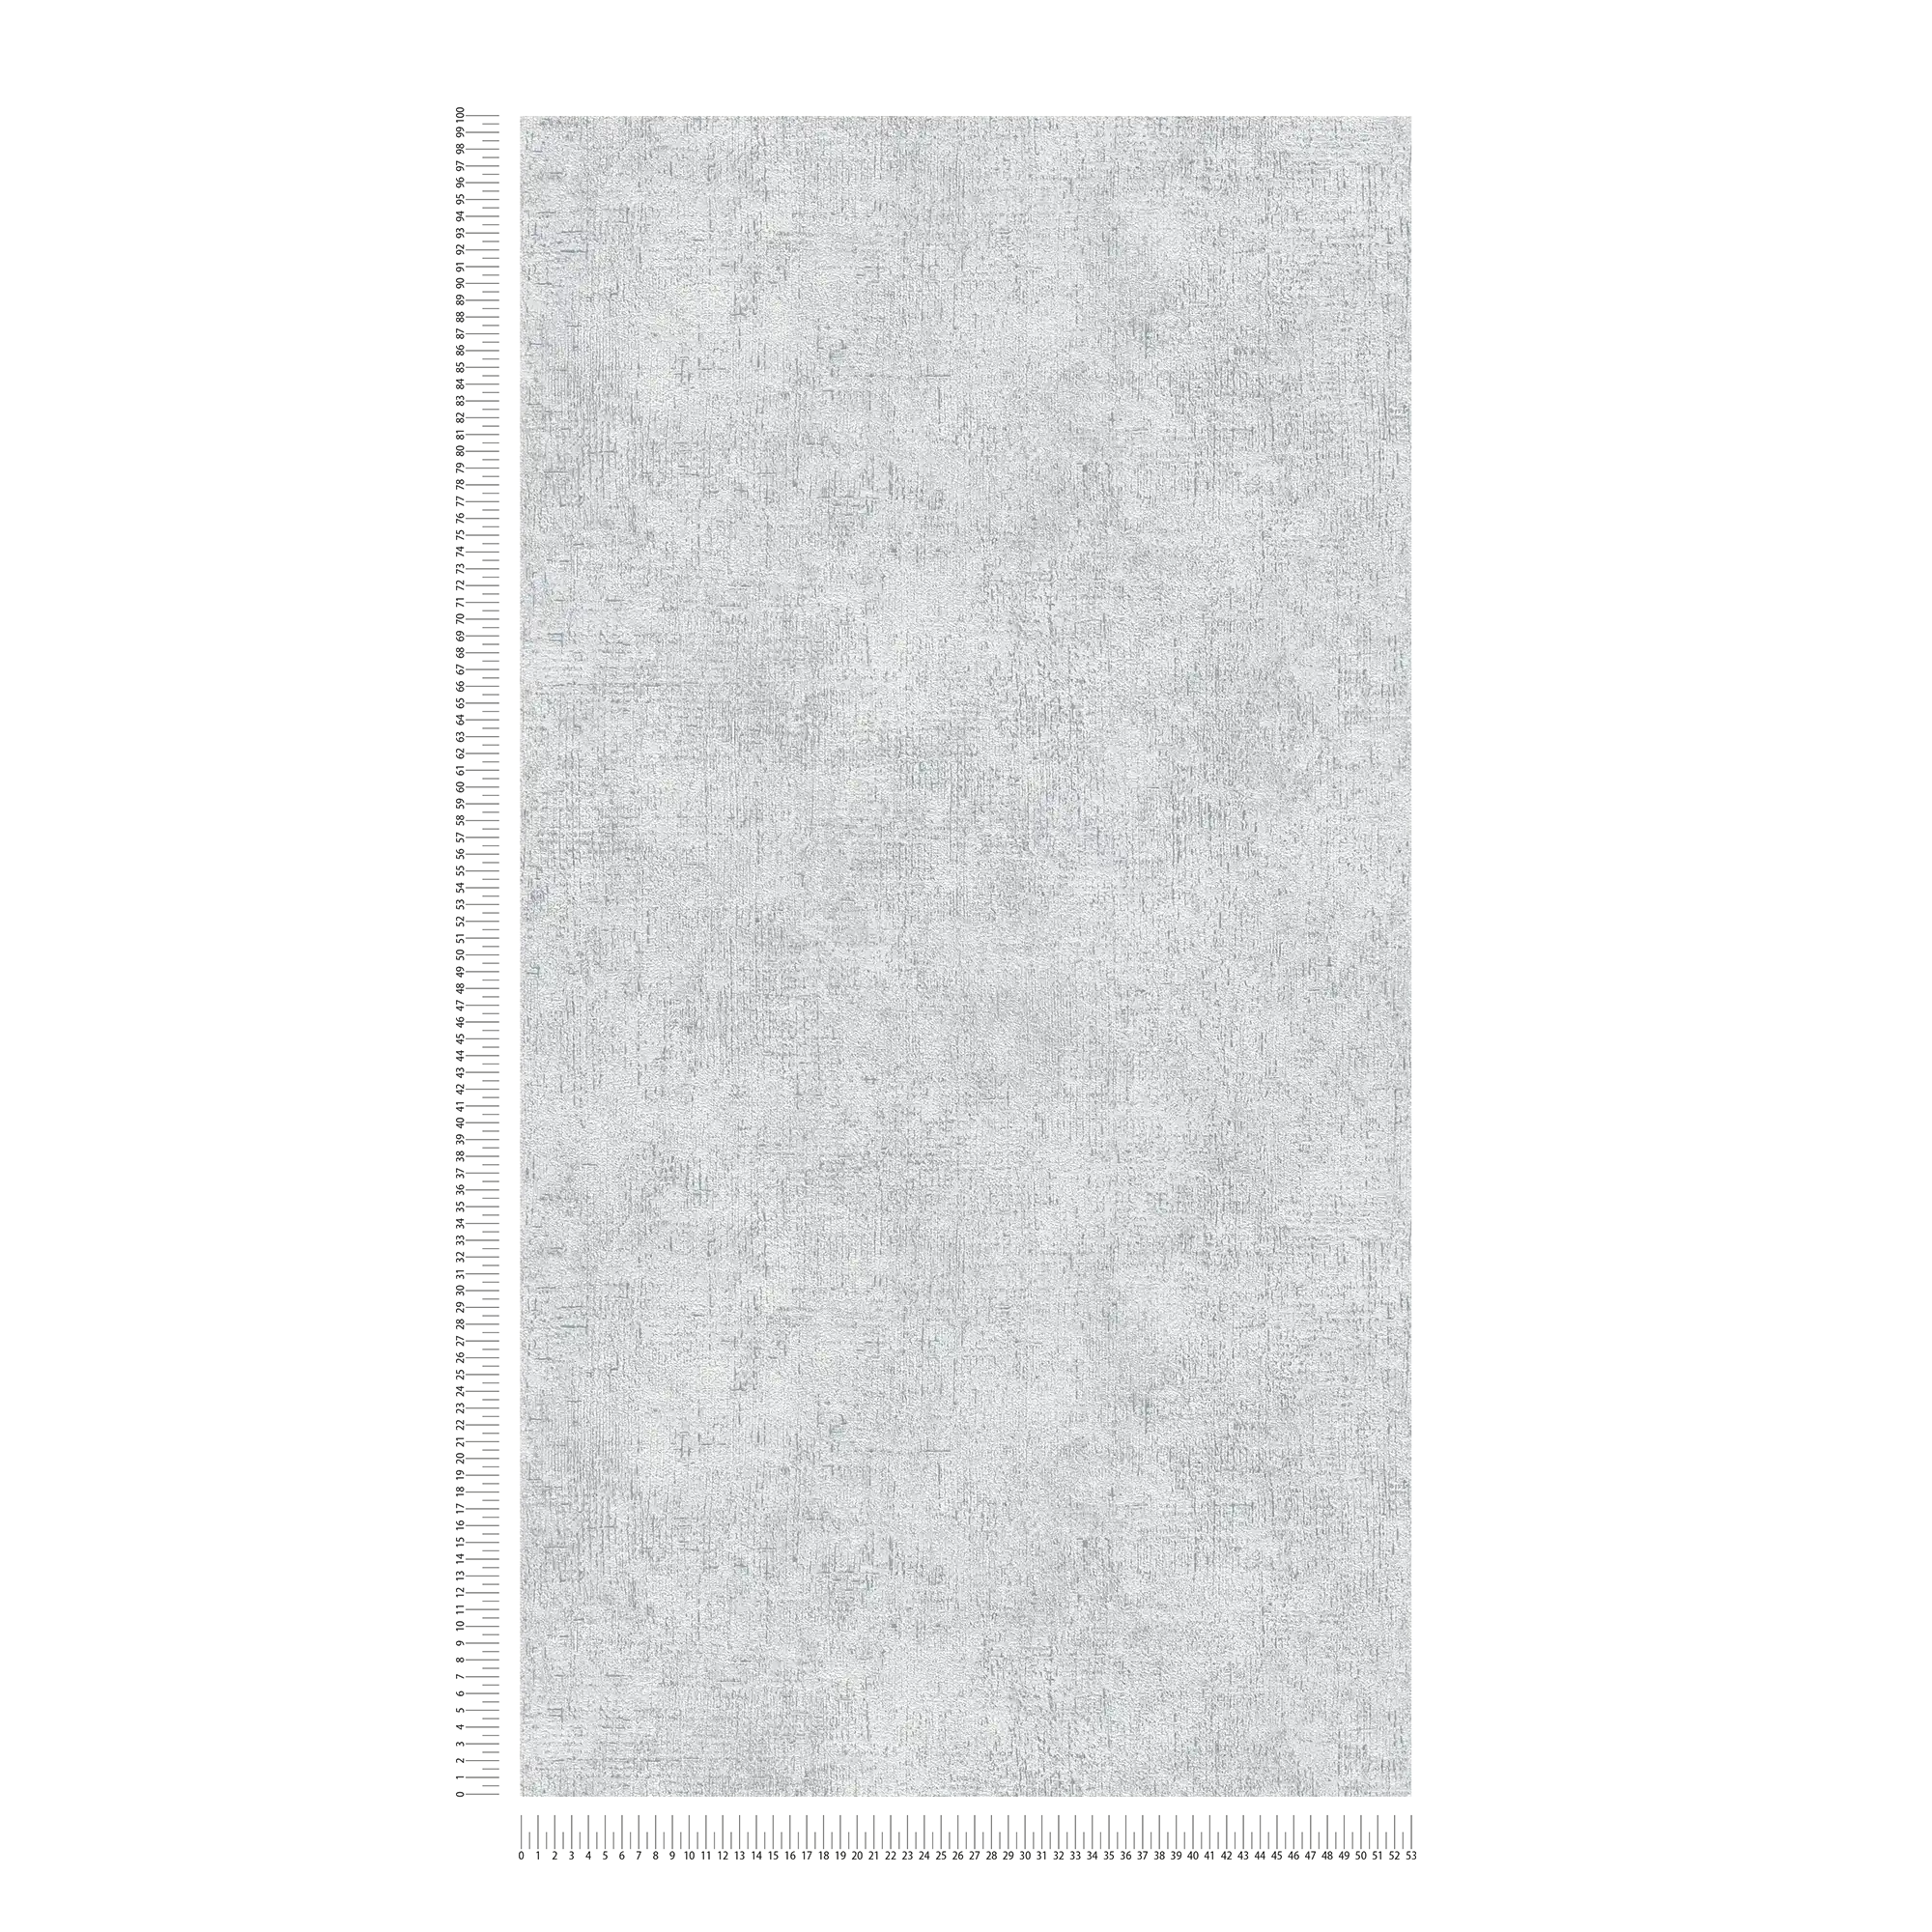             Carta da parati in tessuto non tessuto struttura rustica in gesso - grigio
        